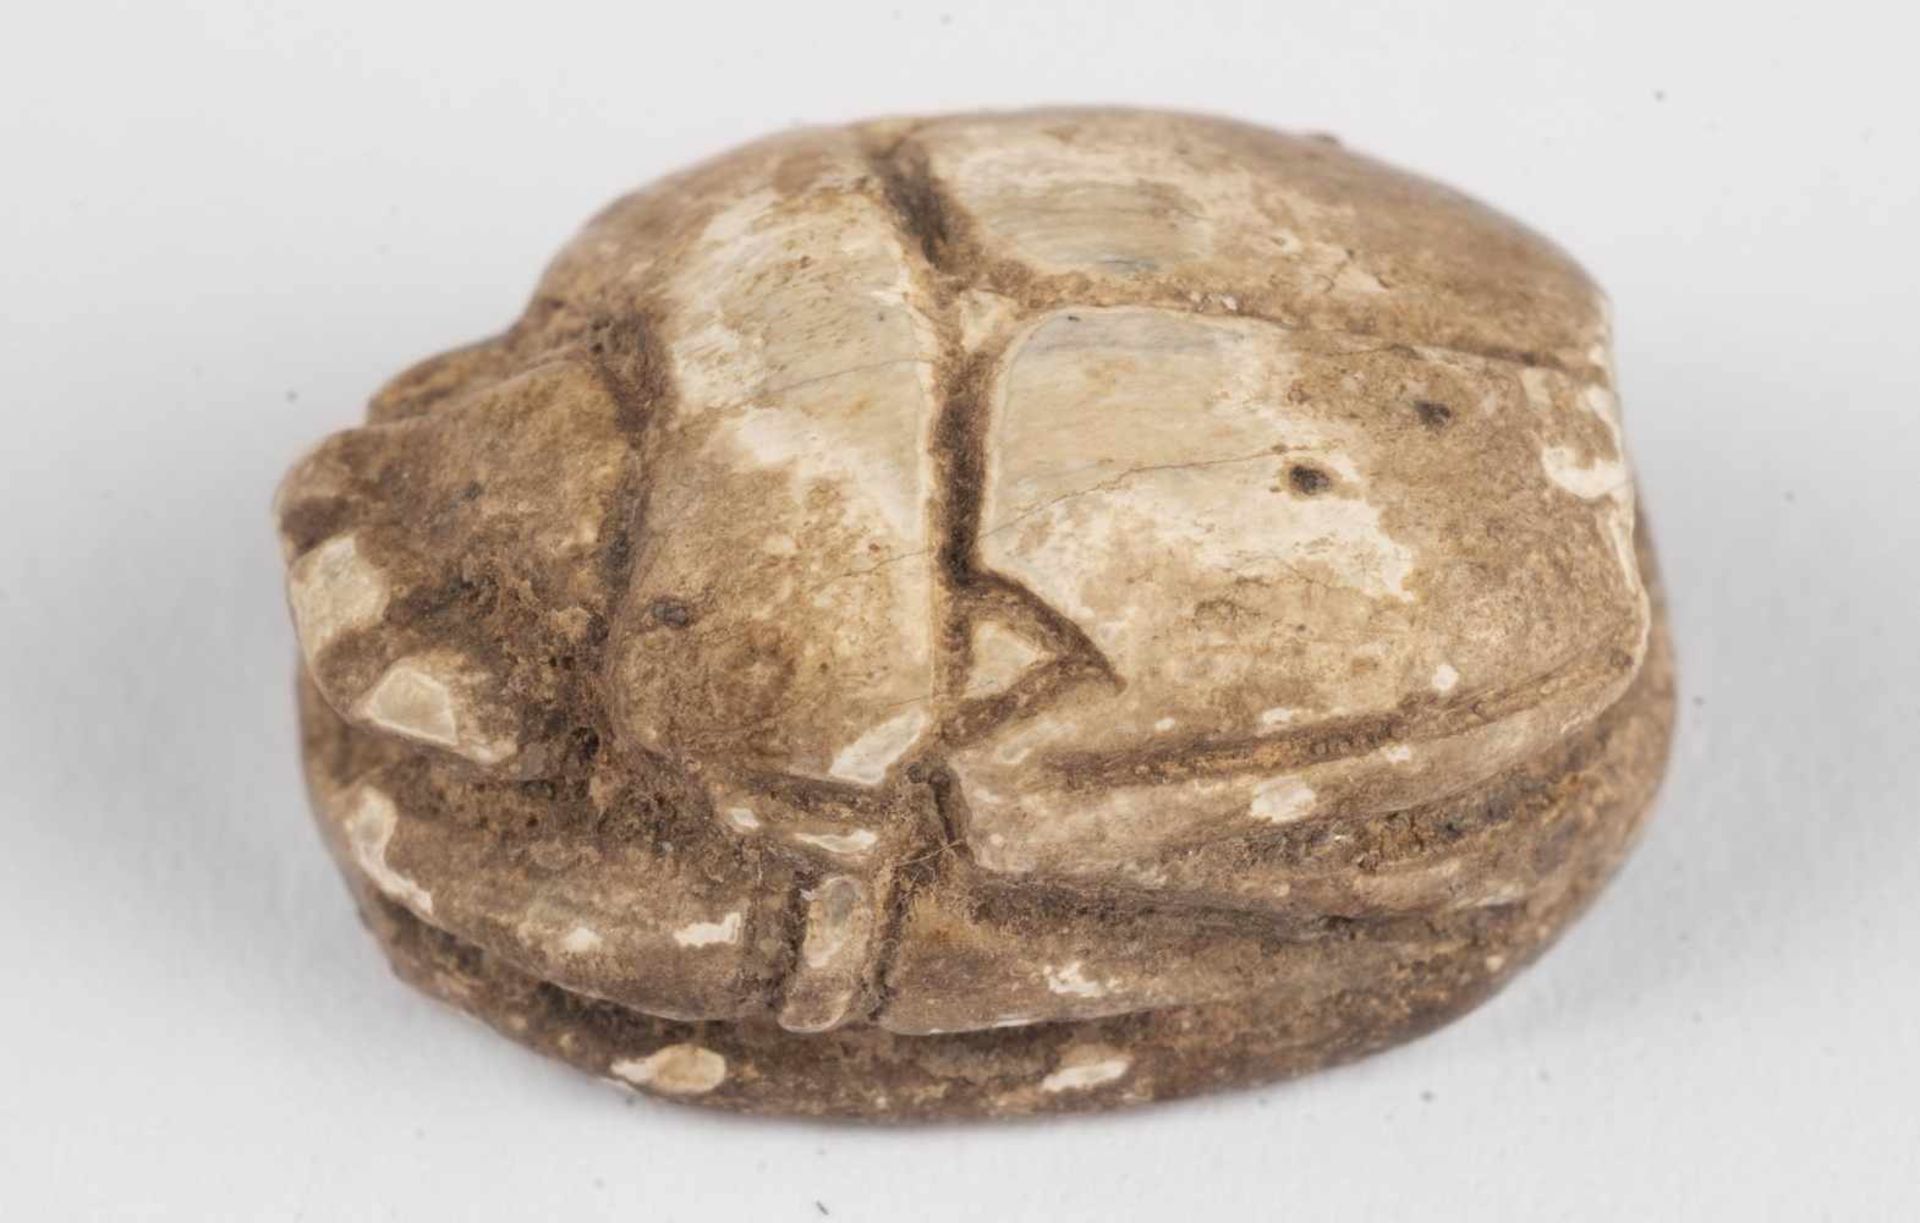 SkarabäusÄgypten, Neues Reich bis Spätzeit (ab 1550 v. Chr.)Steatit, hell-gräulichBreite: 10 mm,